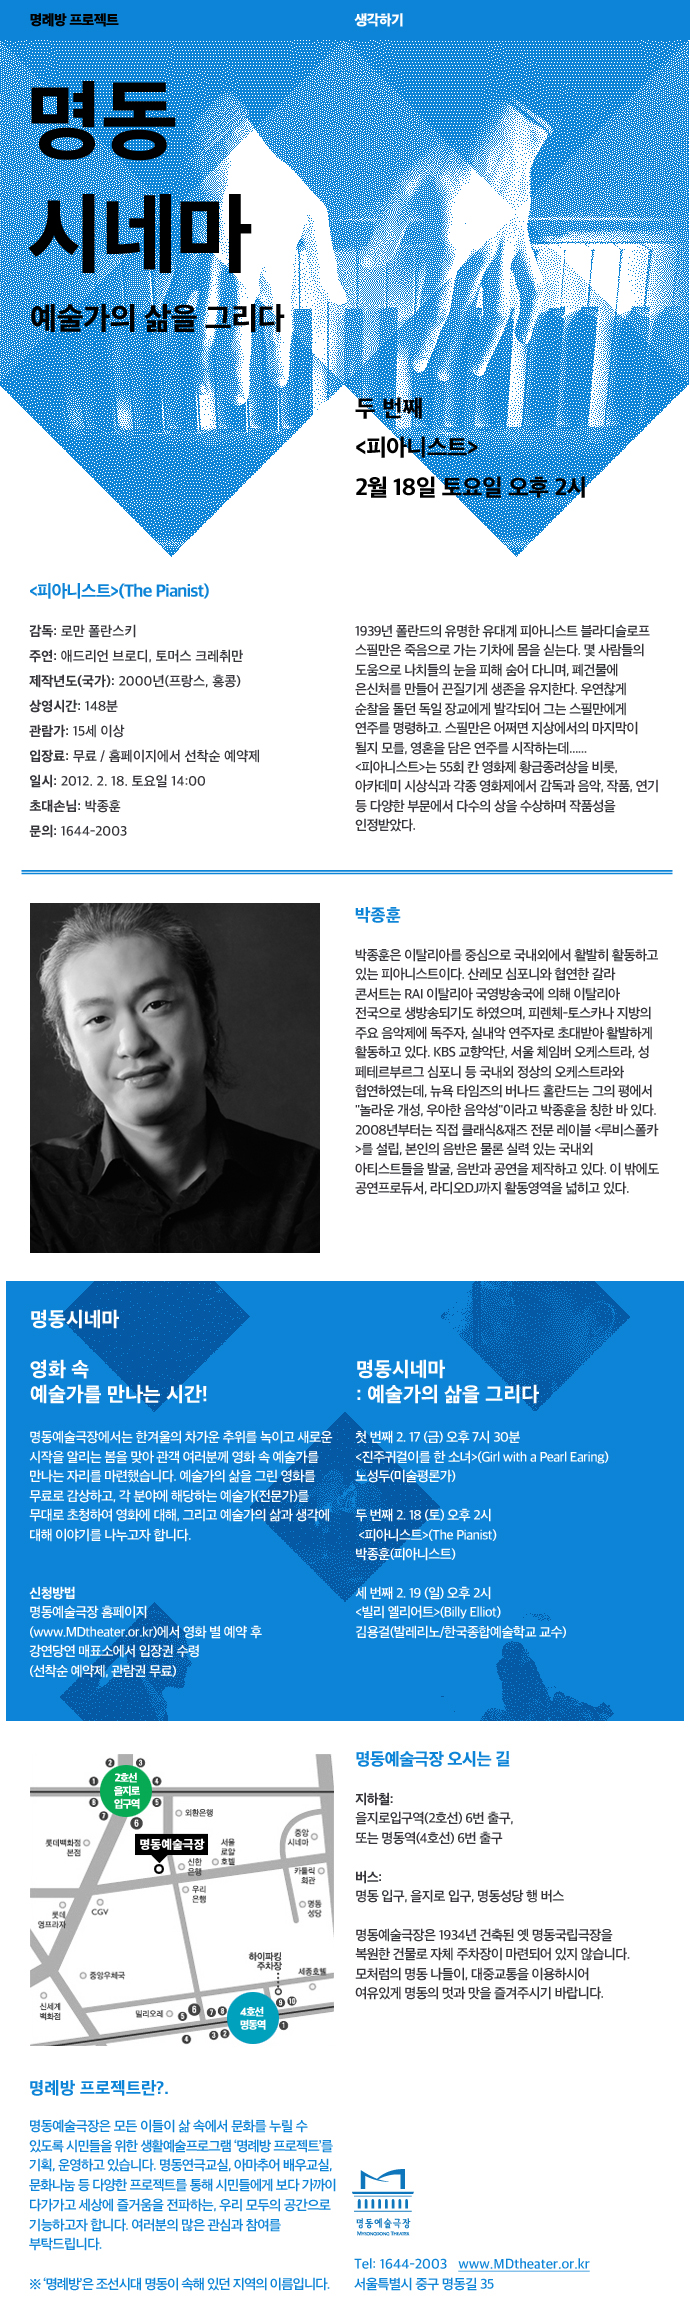 명동시네마-예술가의 삶을 그리다 "피아니스트"(박종훈)  포스터